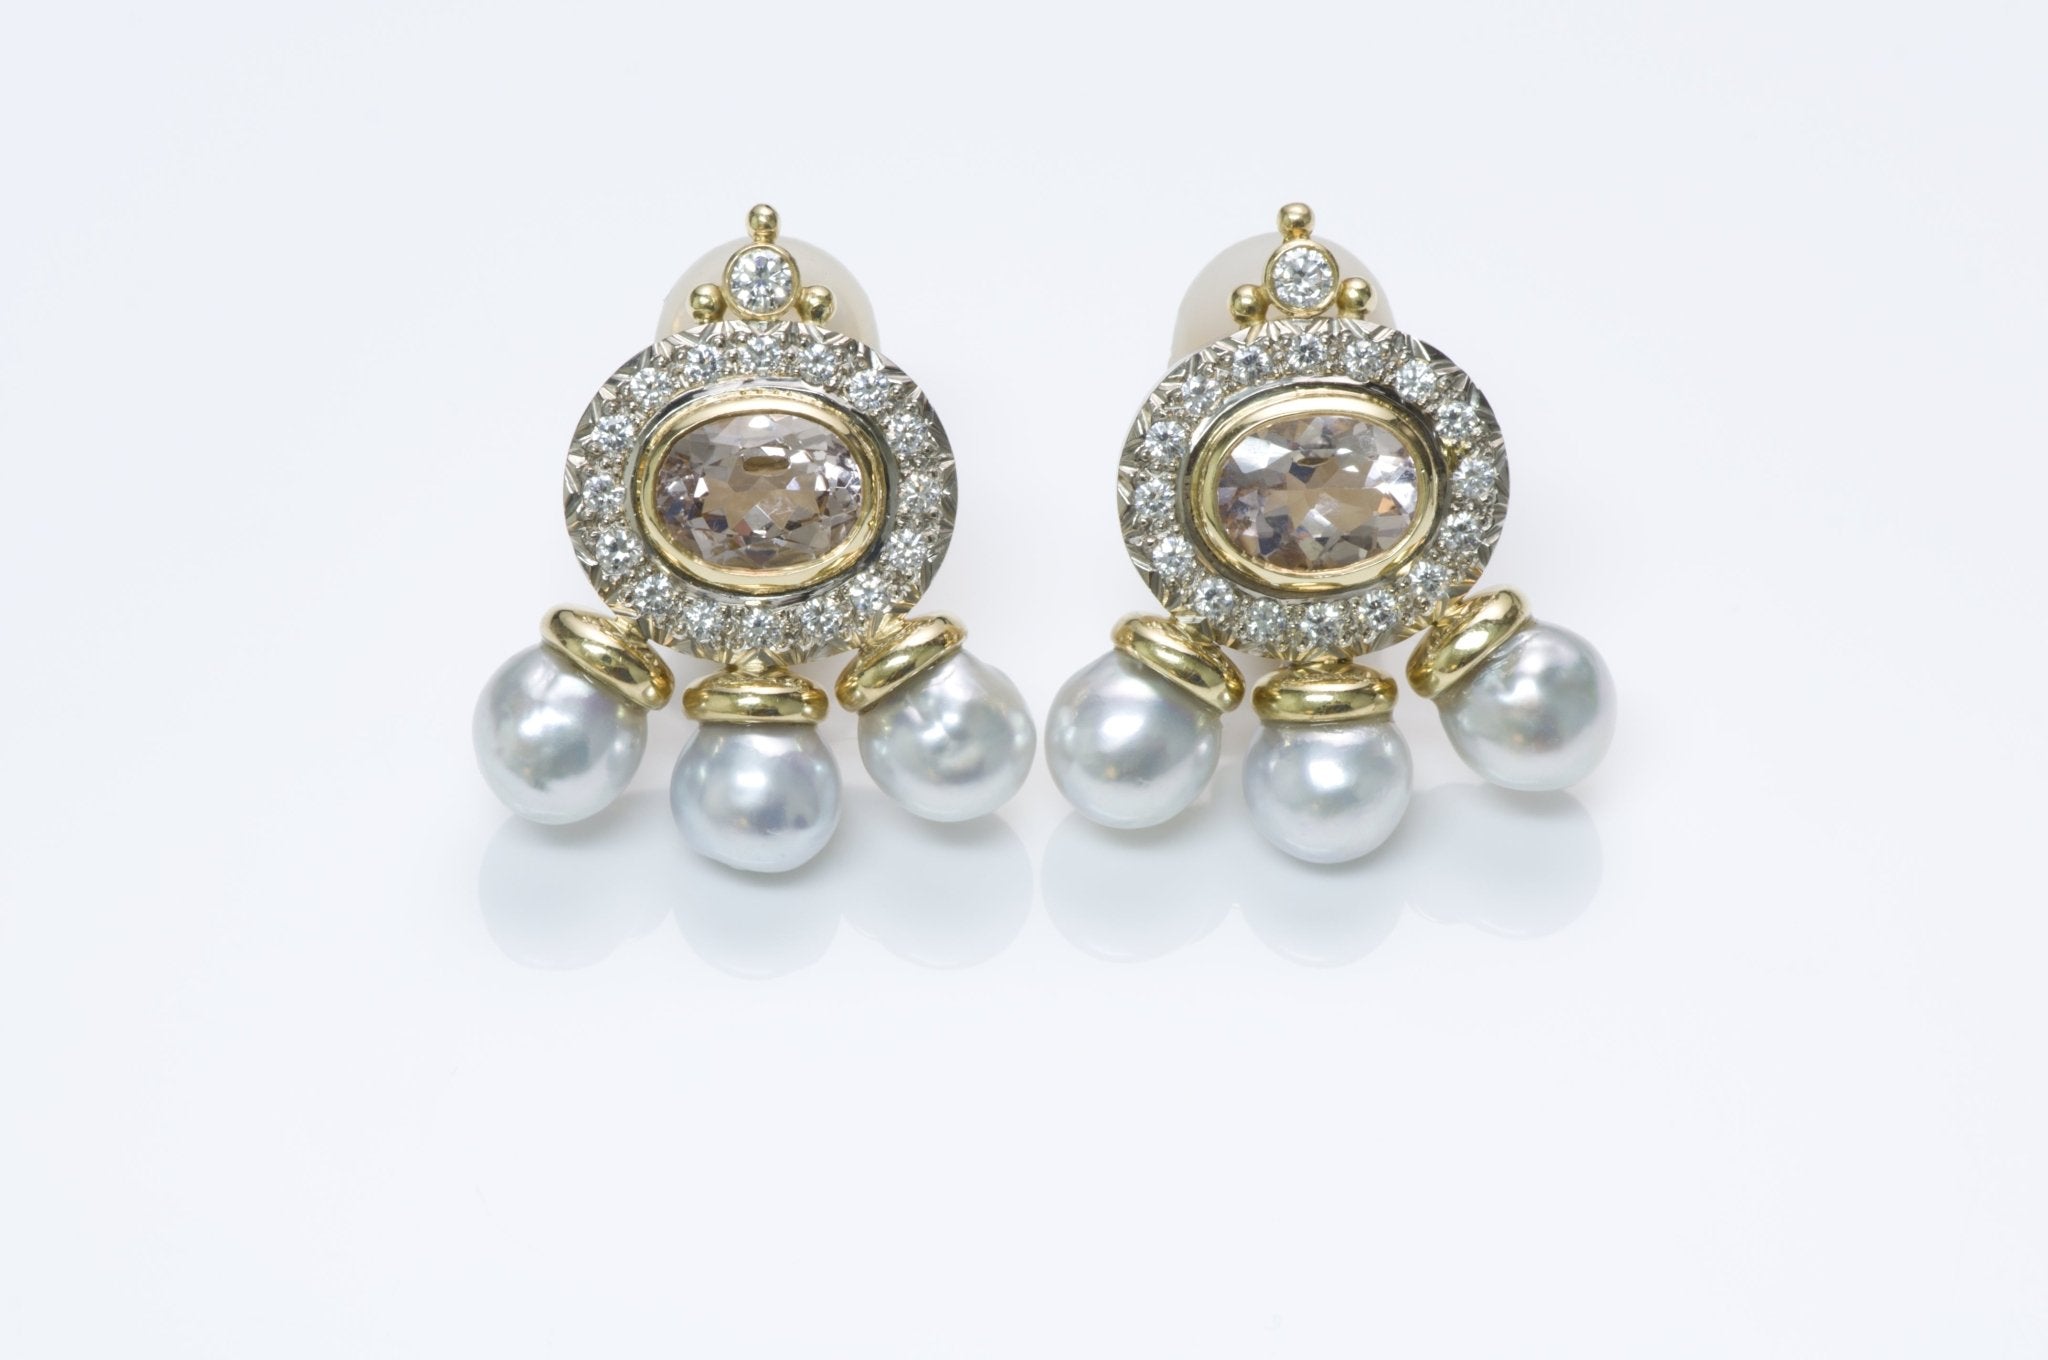 Elizabeth Gage Diamond Pearl Kunzite Gold Earrings